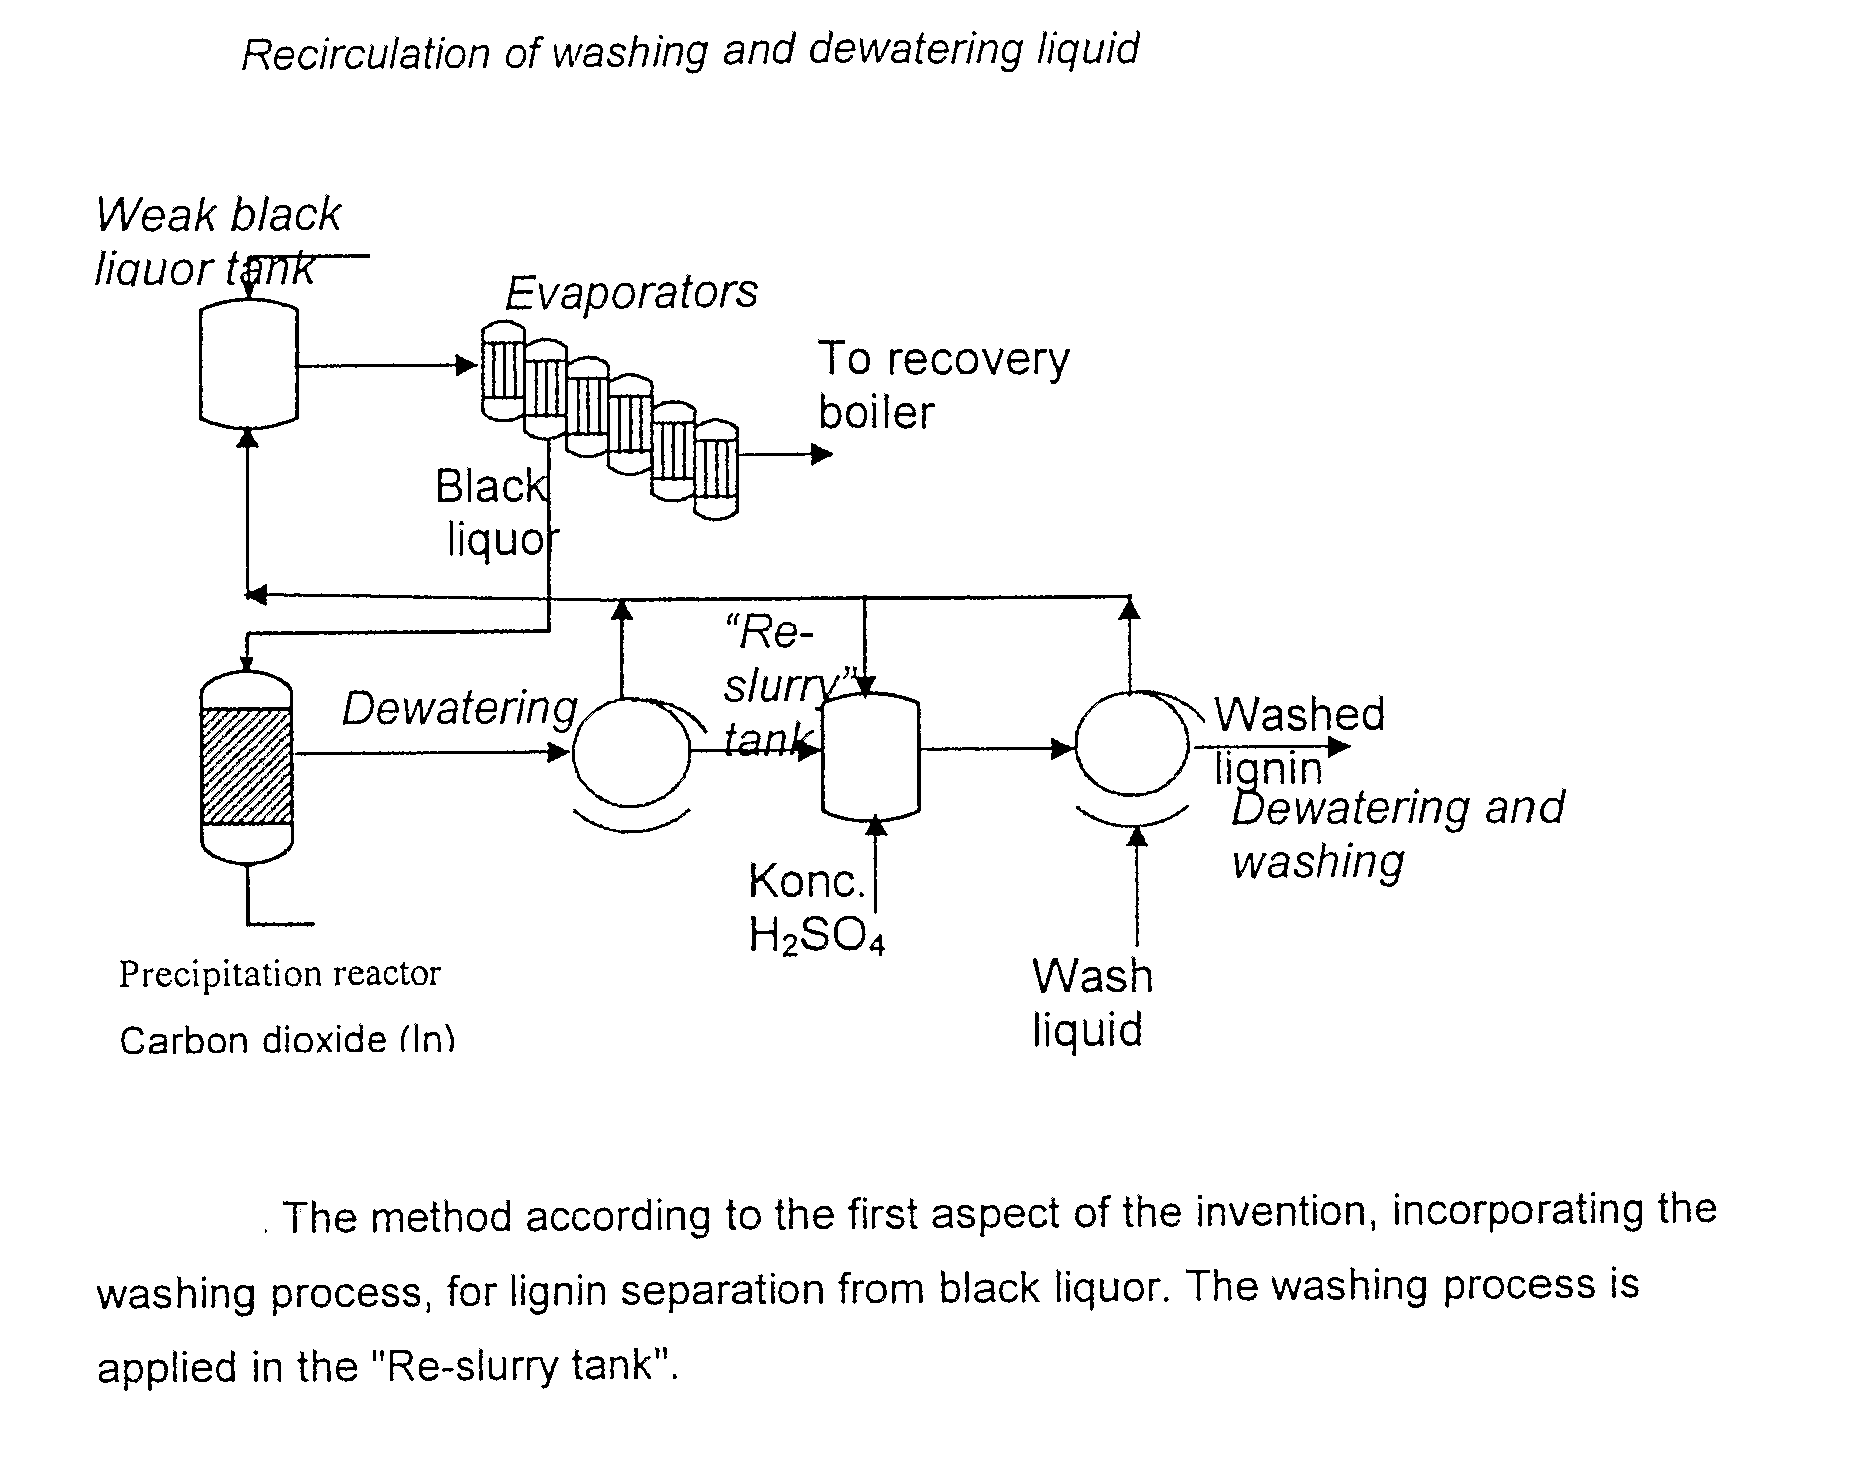 Method for Separating Lignin from Black Liquor